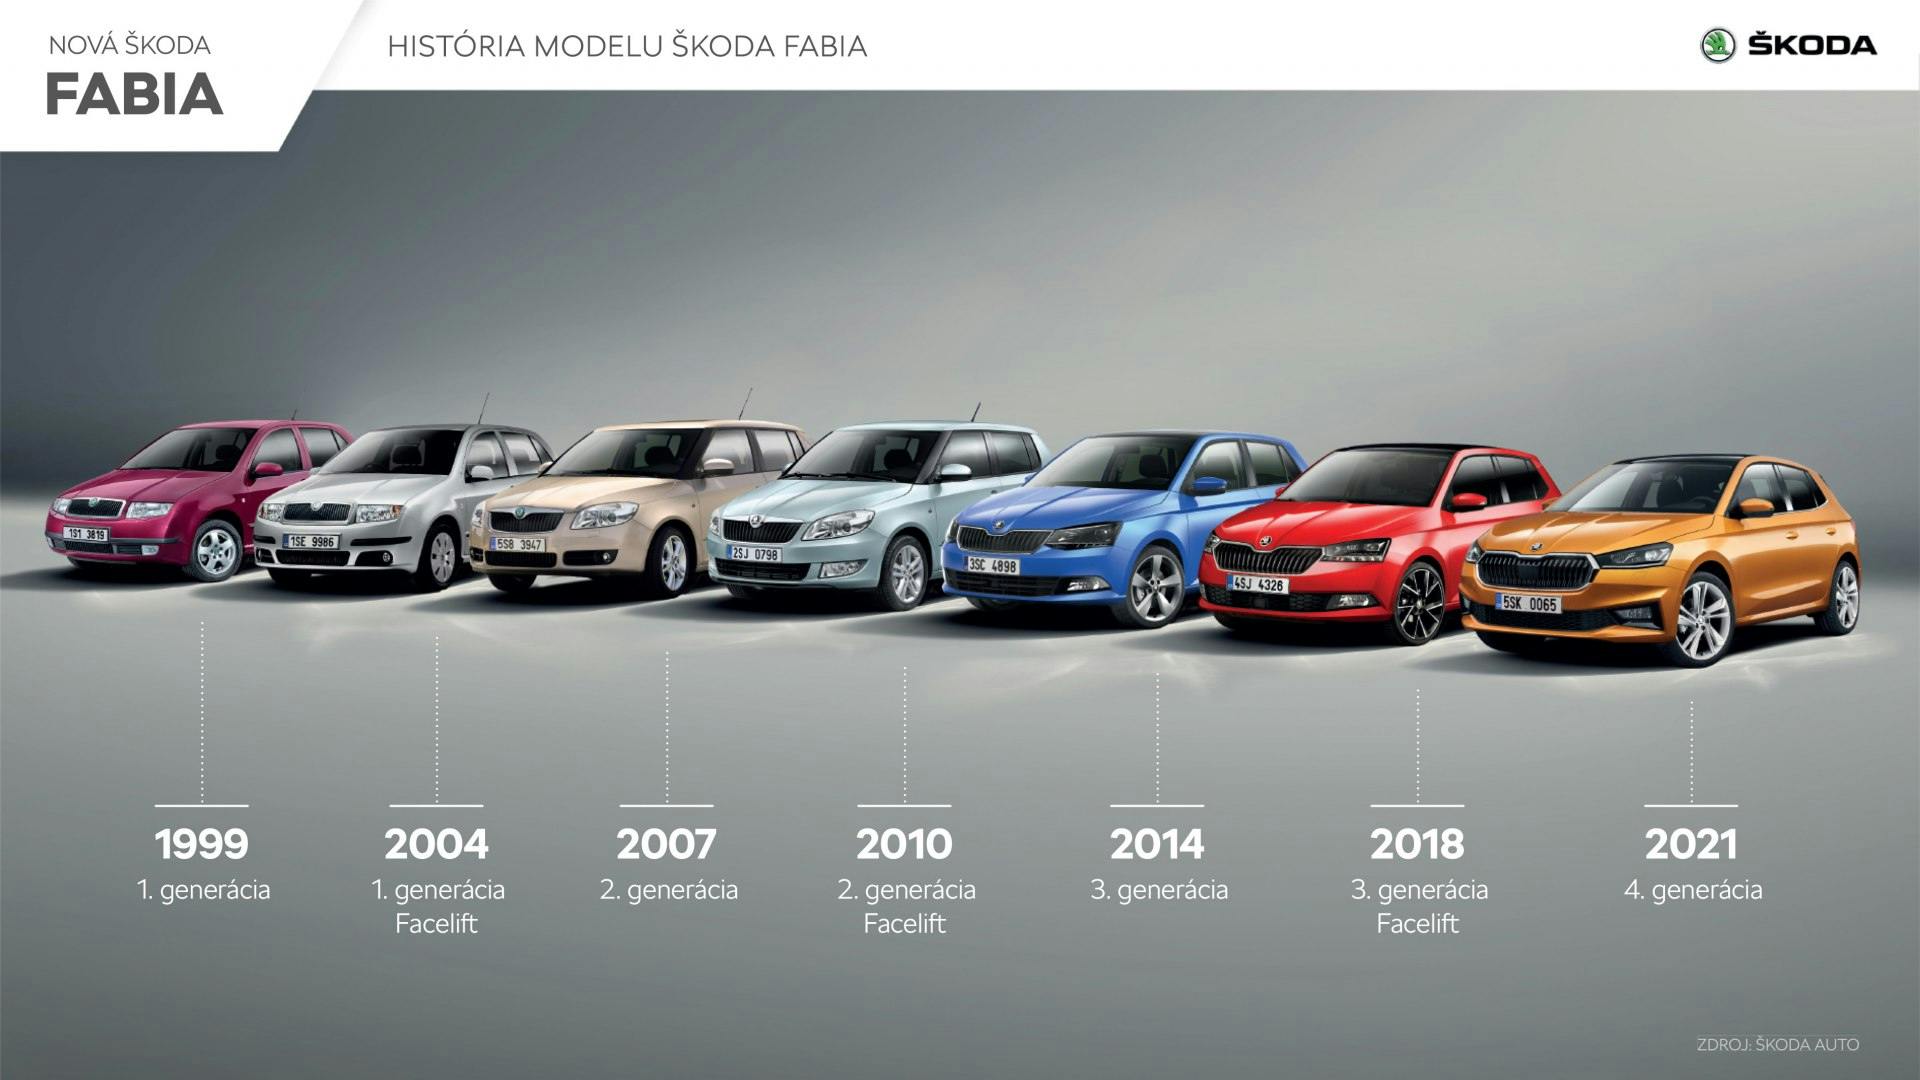 Historicky najpredávanejším modelom naprieč generáciami je obľúbený hatchback Fabia. Slováci si  od jej predstavenia zakúpili až 212 172 kusov Fabie.